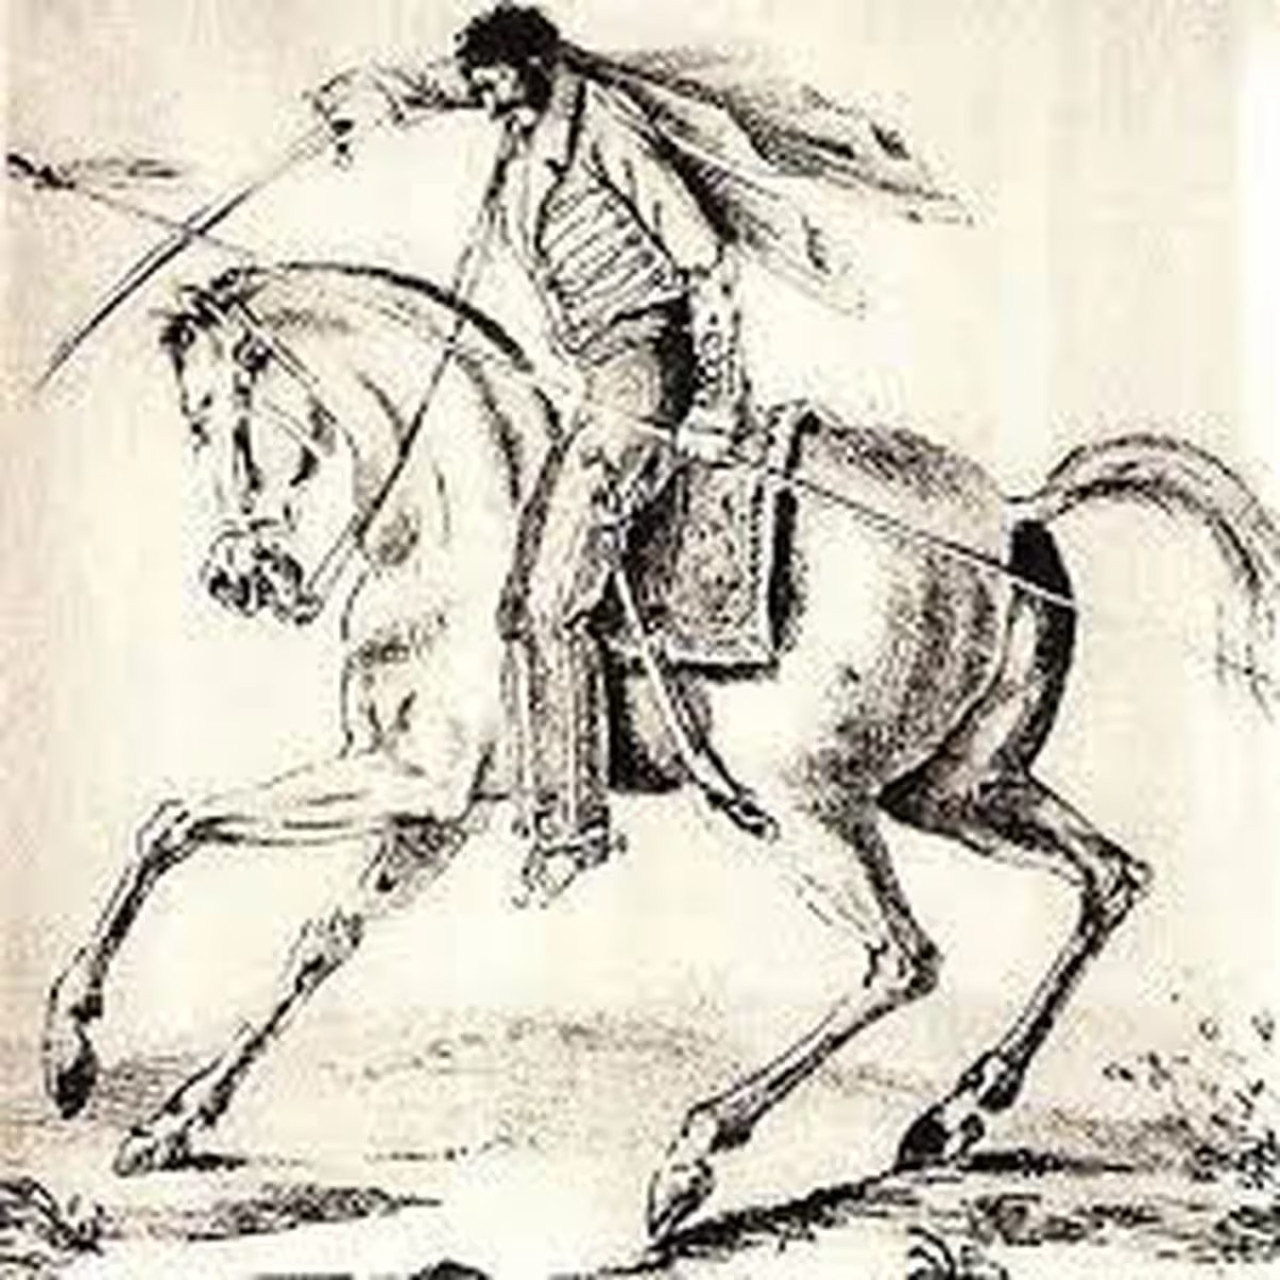 El caballo Moro y Facundo Quiroga